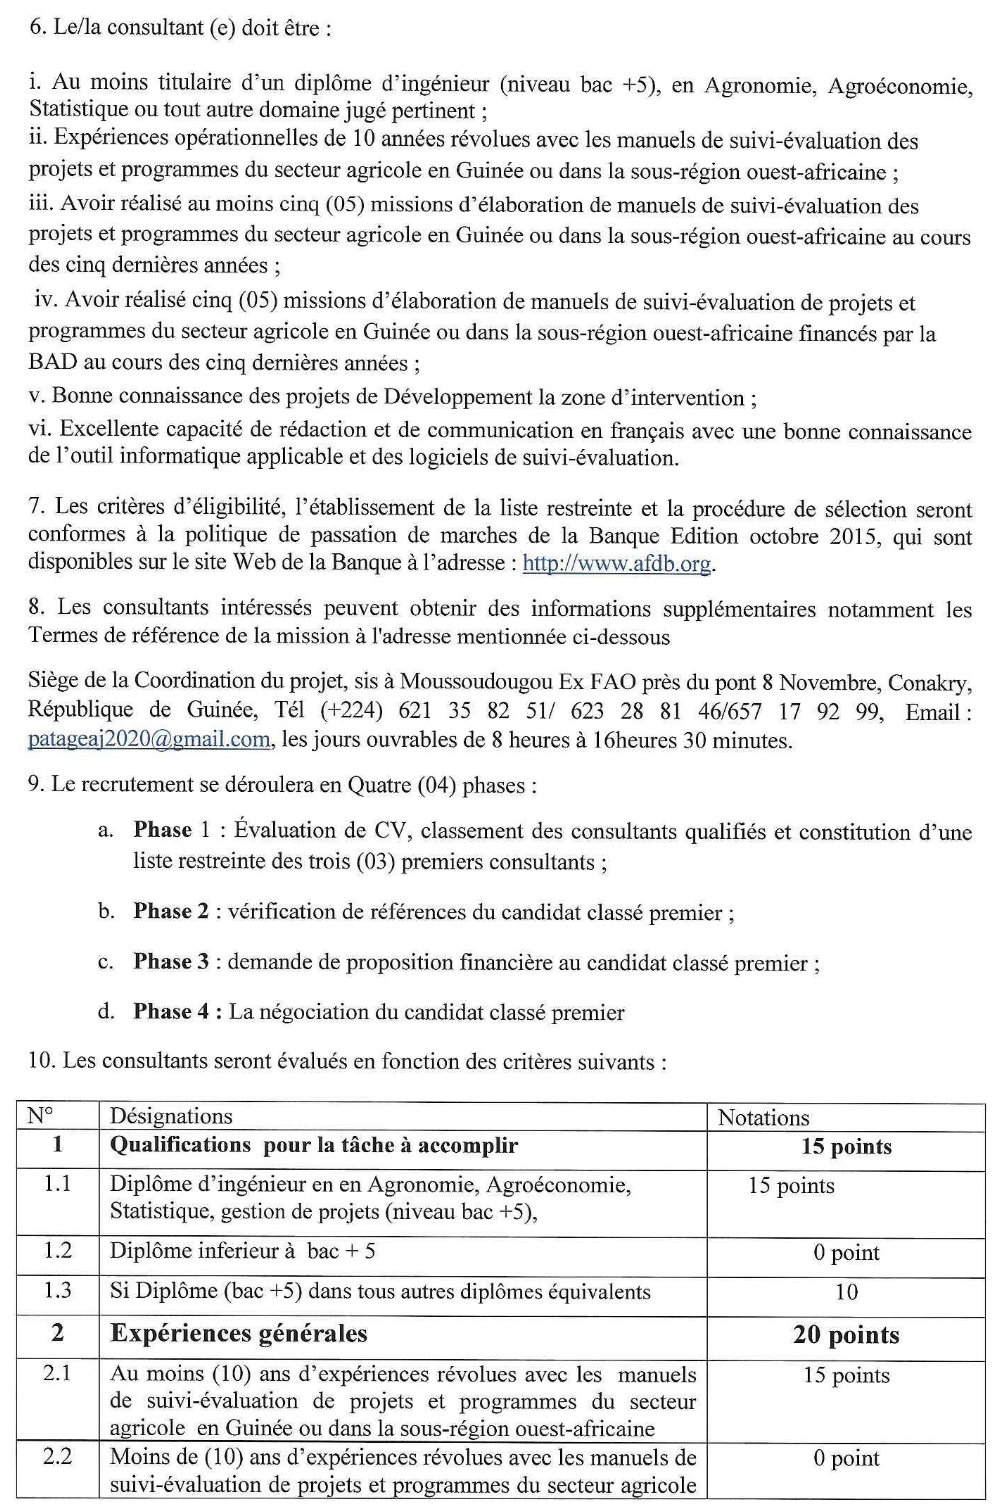 Elaboration d'unManuel de Suivi Evaluation du Projet - BAD p1